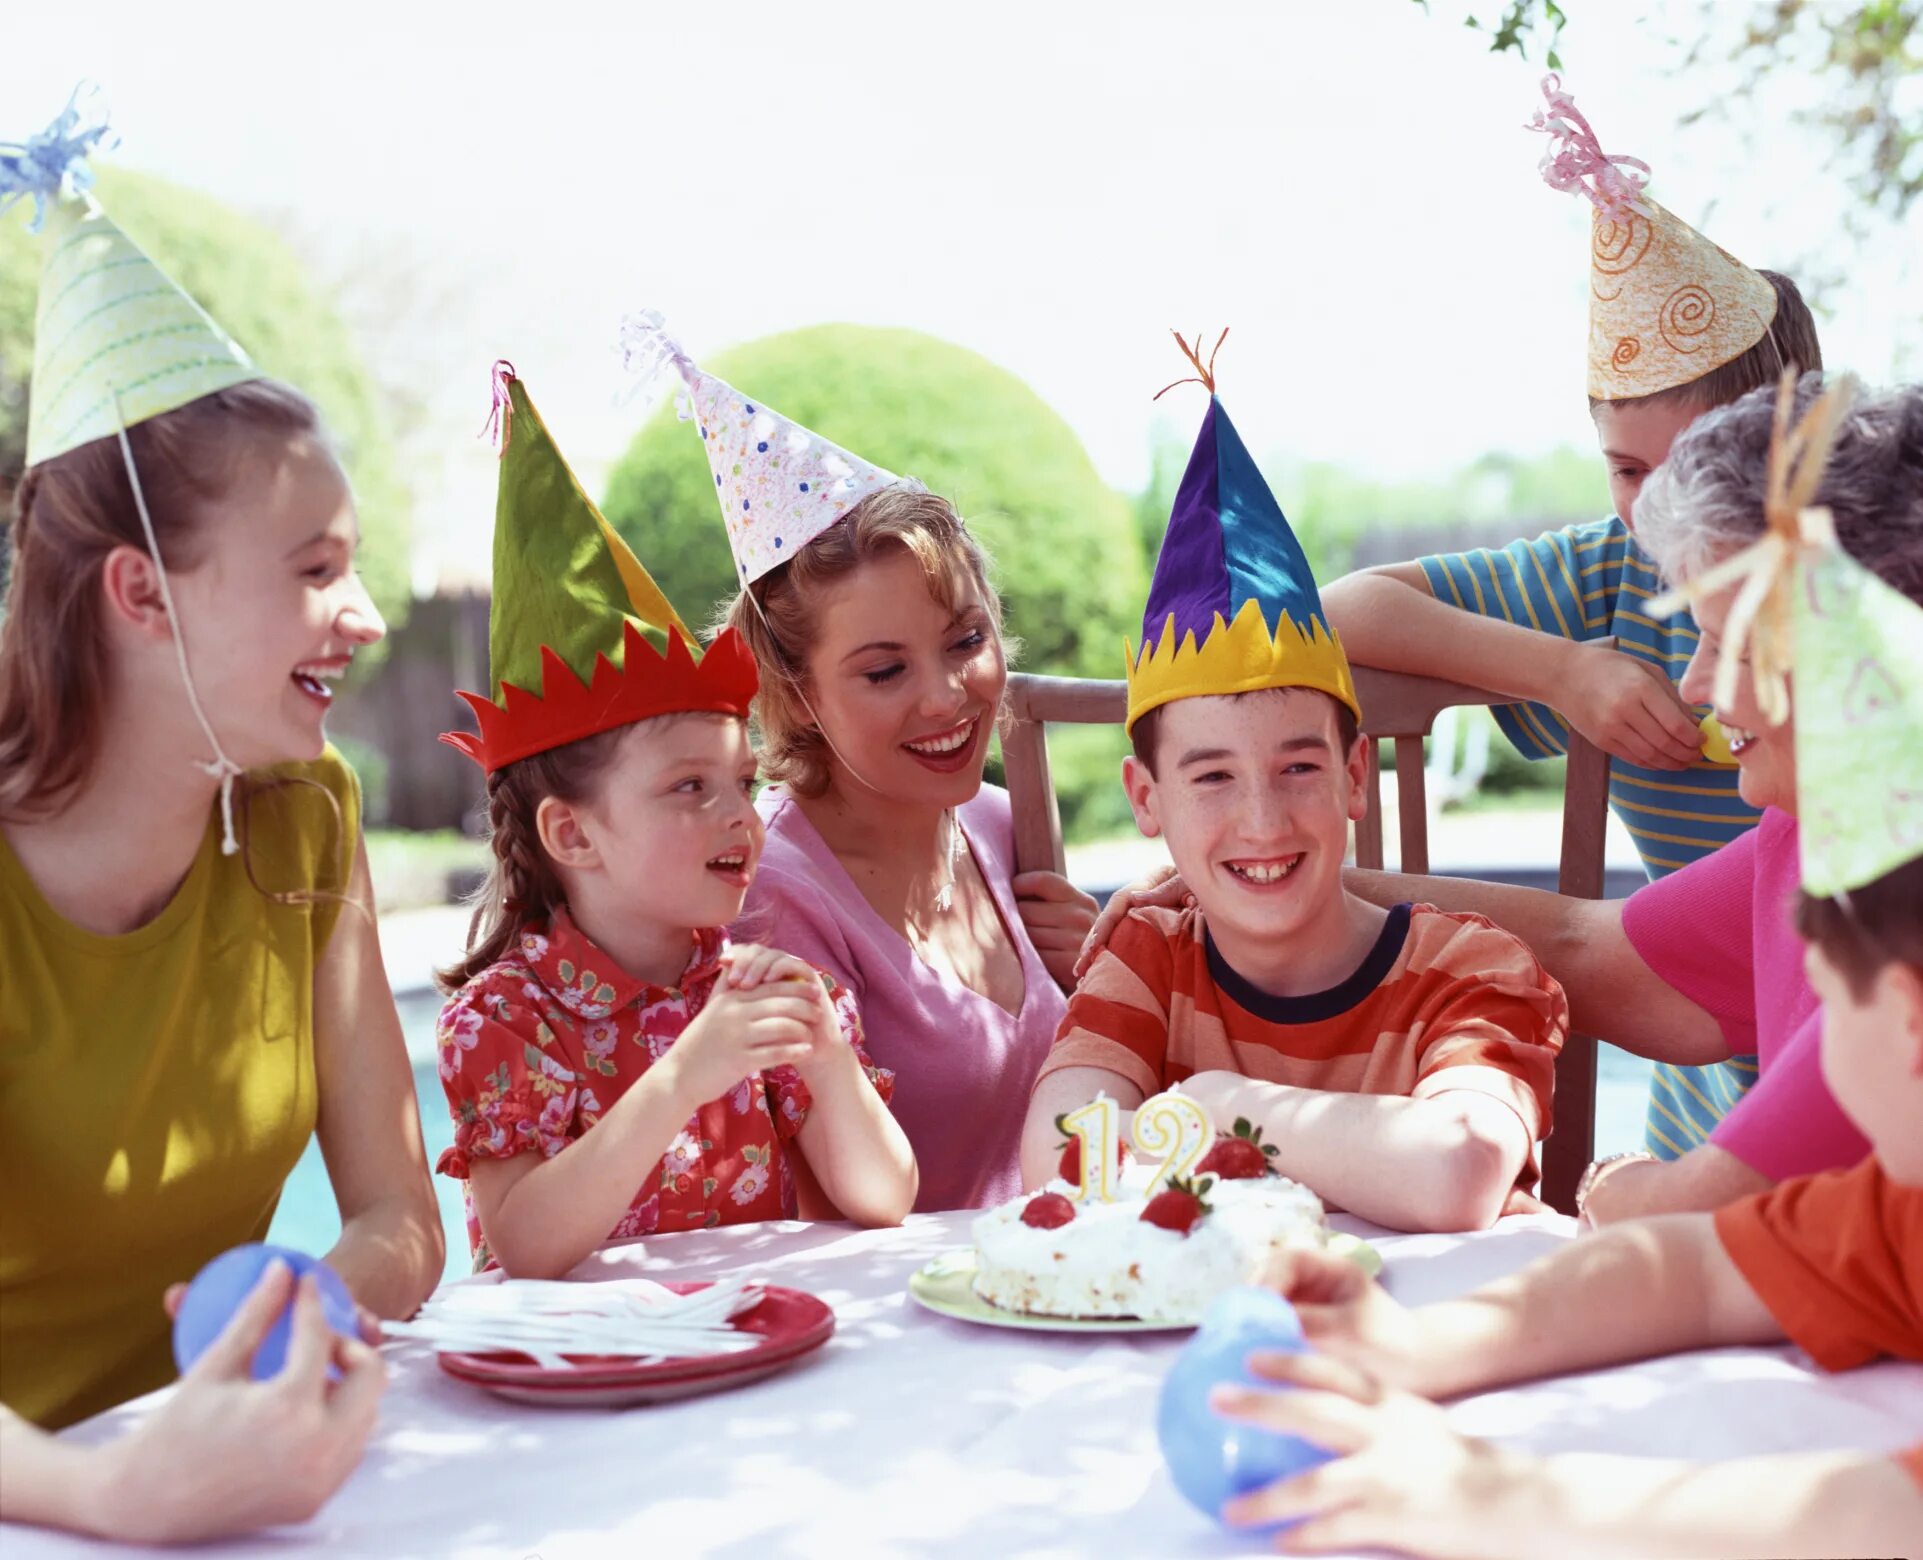 Развлечения за столом. Празднование дня рождения. Интересные конкурсы для детей за столом. С днём рождения ребёнку. День рождения вечеринка.